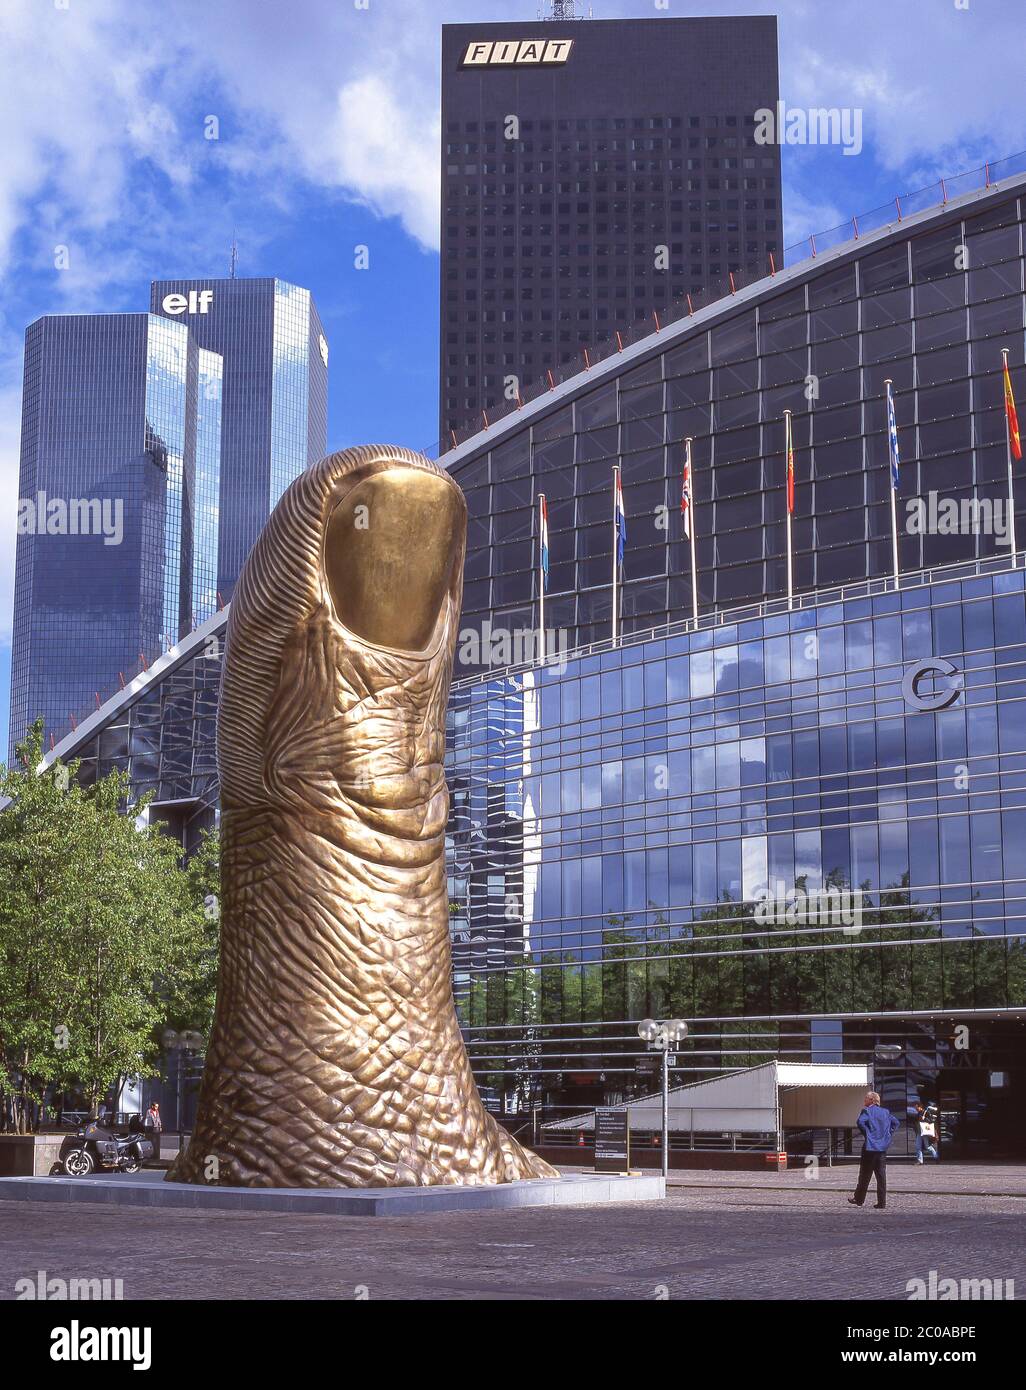 'Le Puce' sculpture outside CNIT Convention Centre, La Défense, Paris, Île-de-France, France Stock Photo